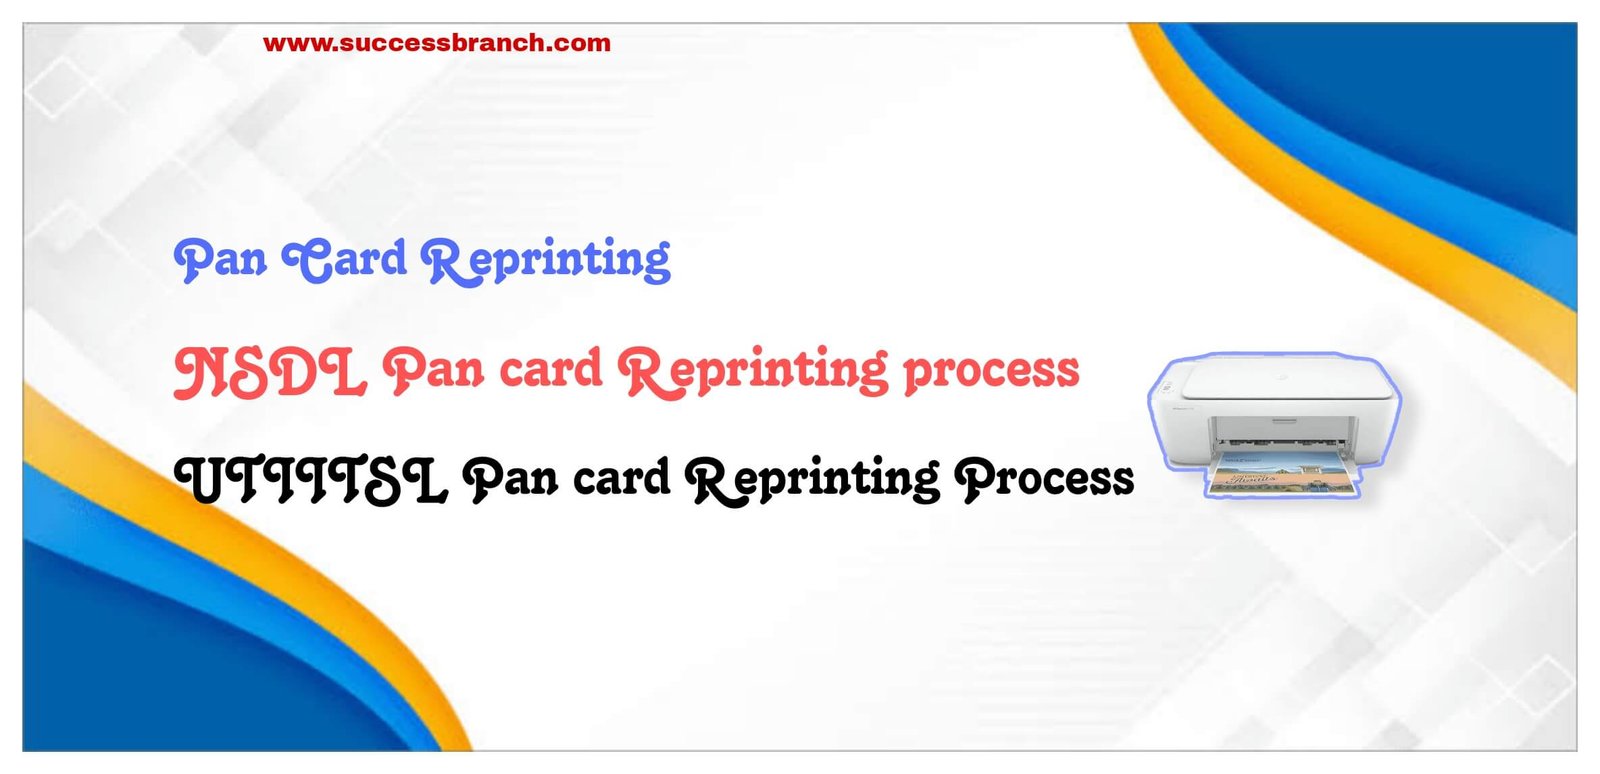 Pan card reprint